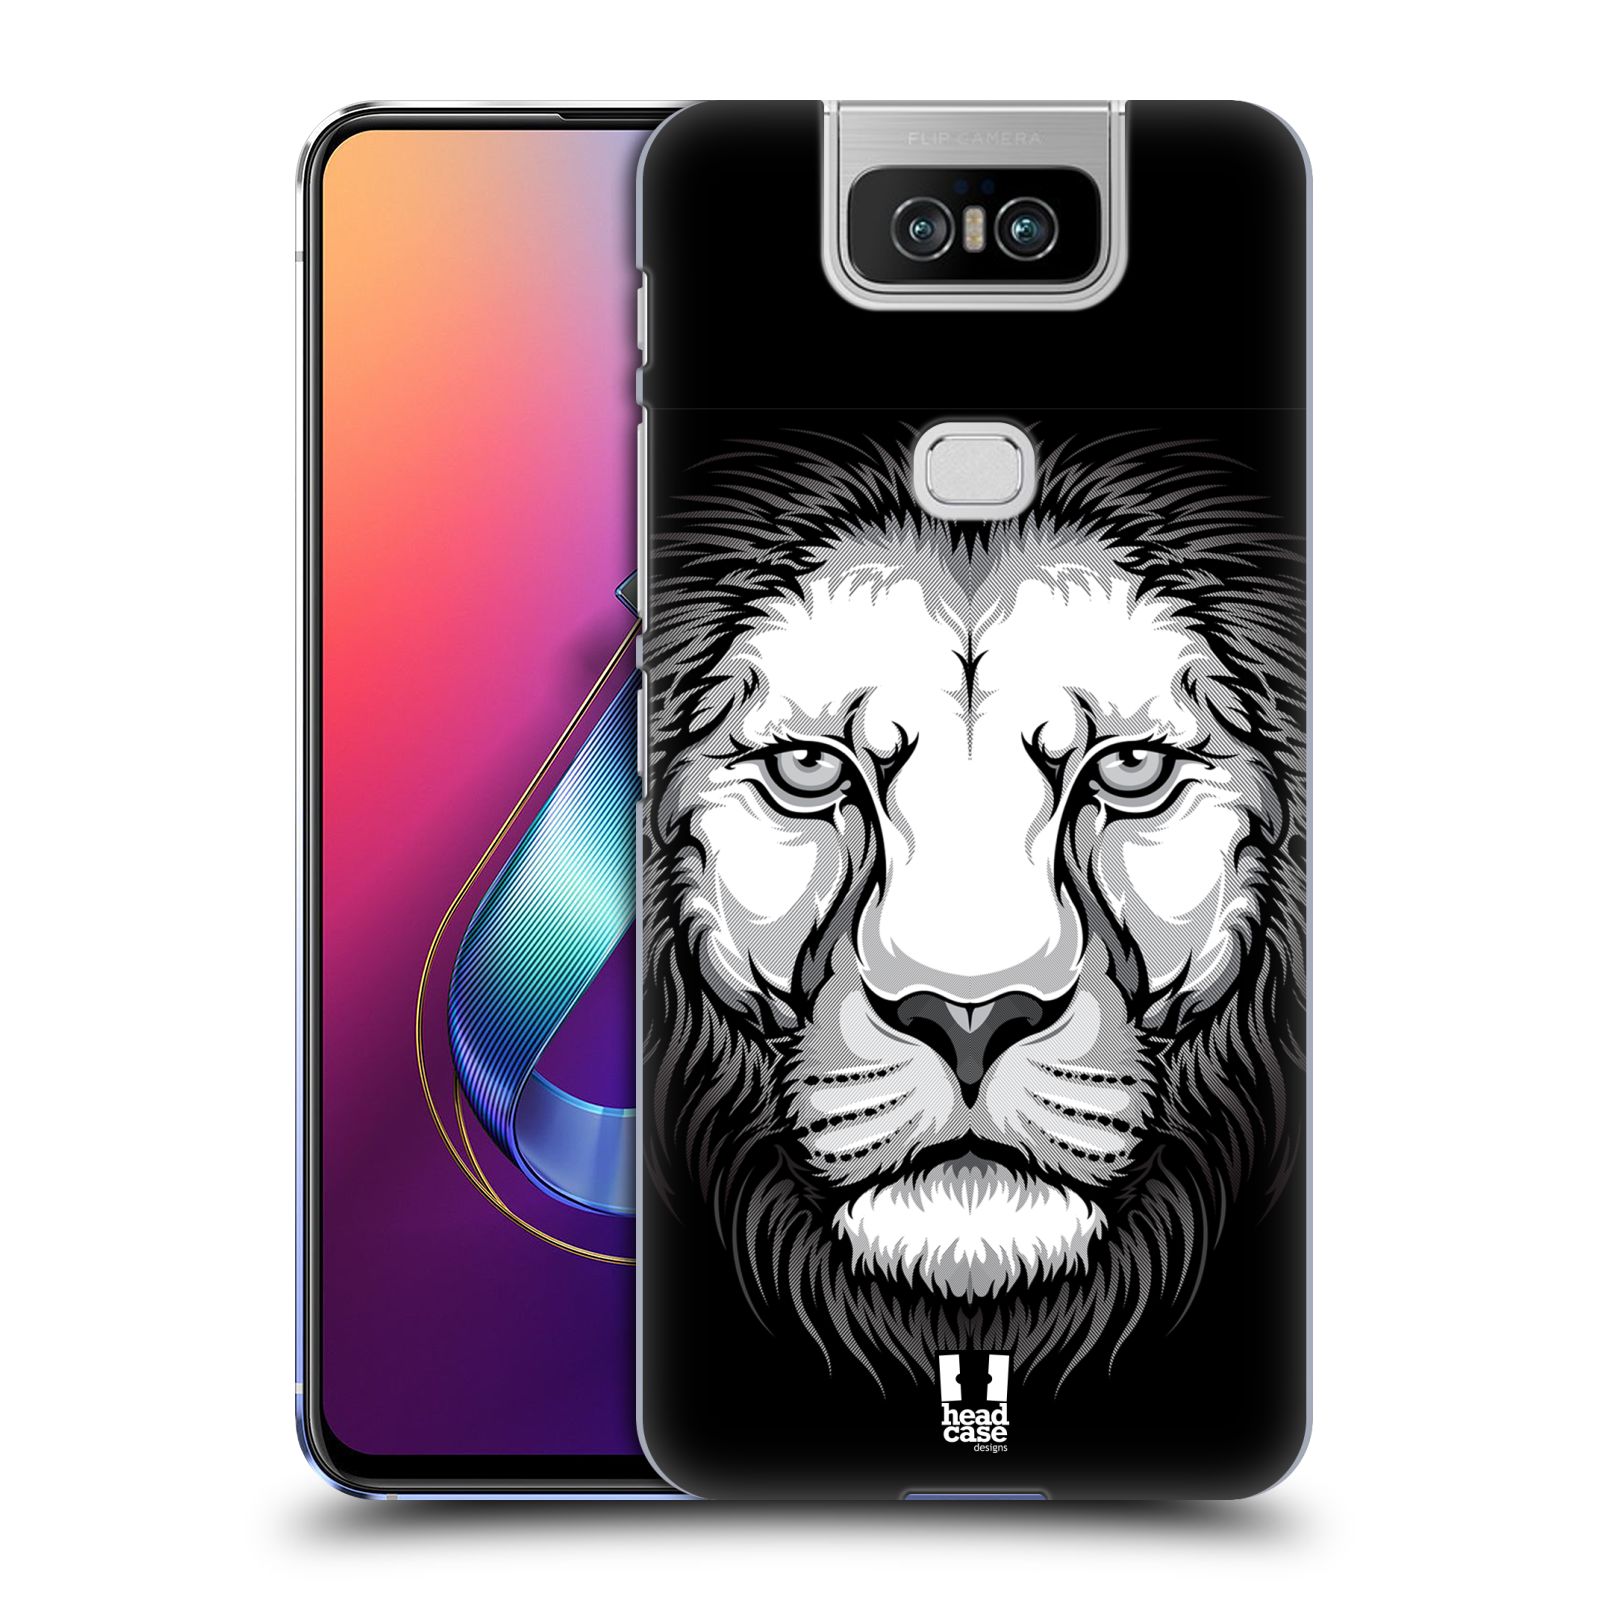 Pouzdro na mobil Asus Zenfone 6 ZS630KL - HEAD CASE - vzor Zvíře kreslená tvář lev